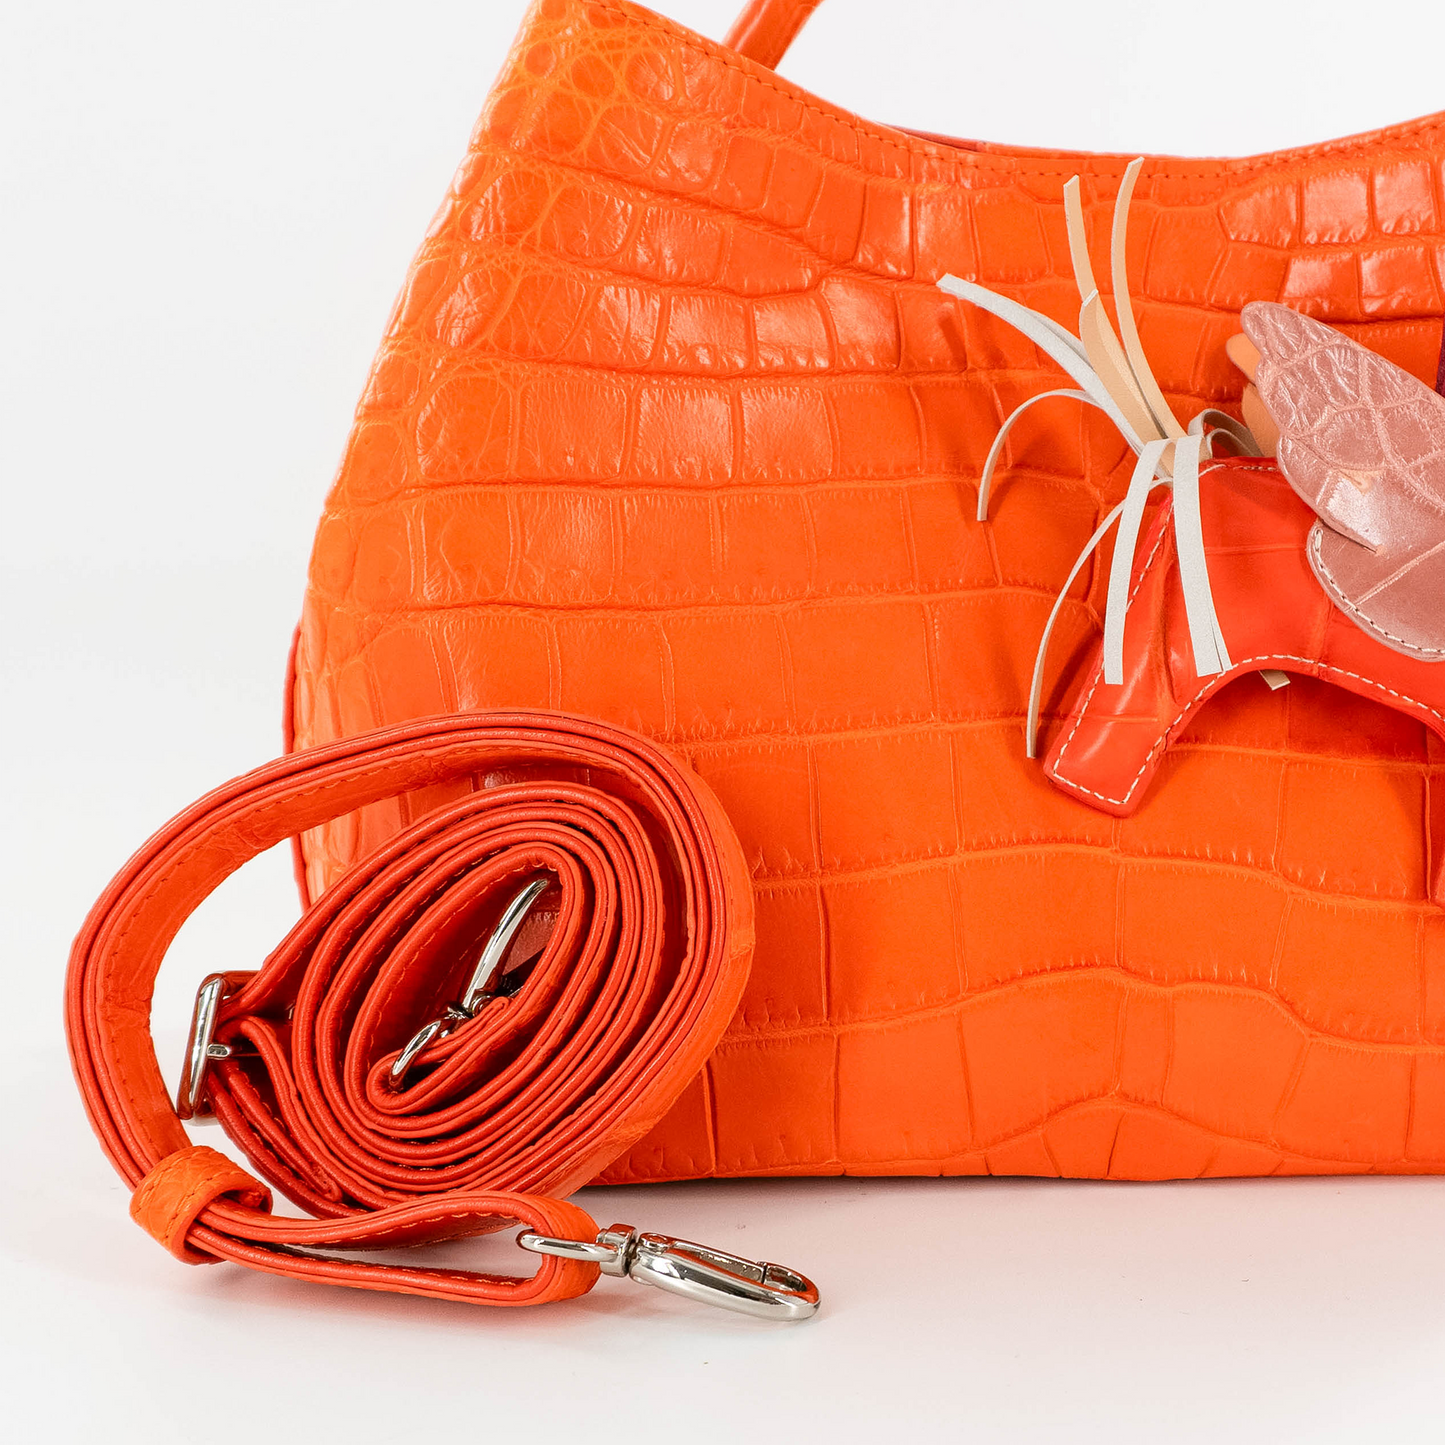 Darling Handbag in Orange Crocodile Belly Skin